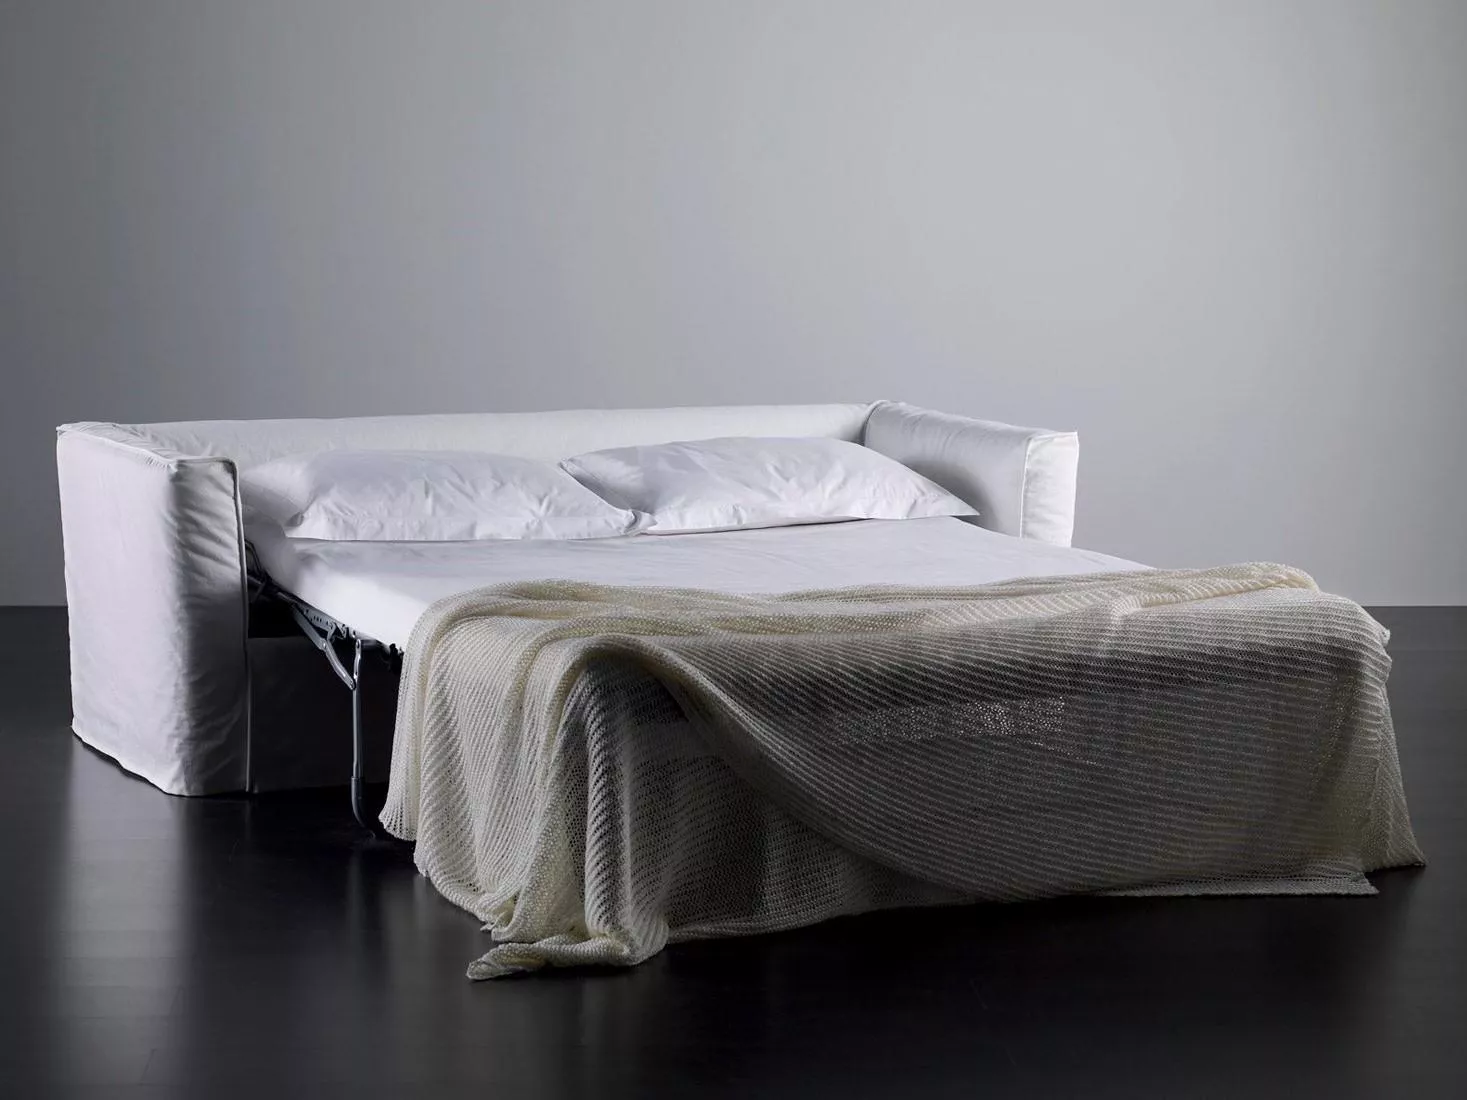 Диван-кровать Law Meridiani day bed, twin bed, double bed, dormeuse — купить по цене фабрики